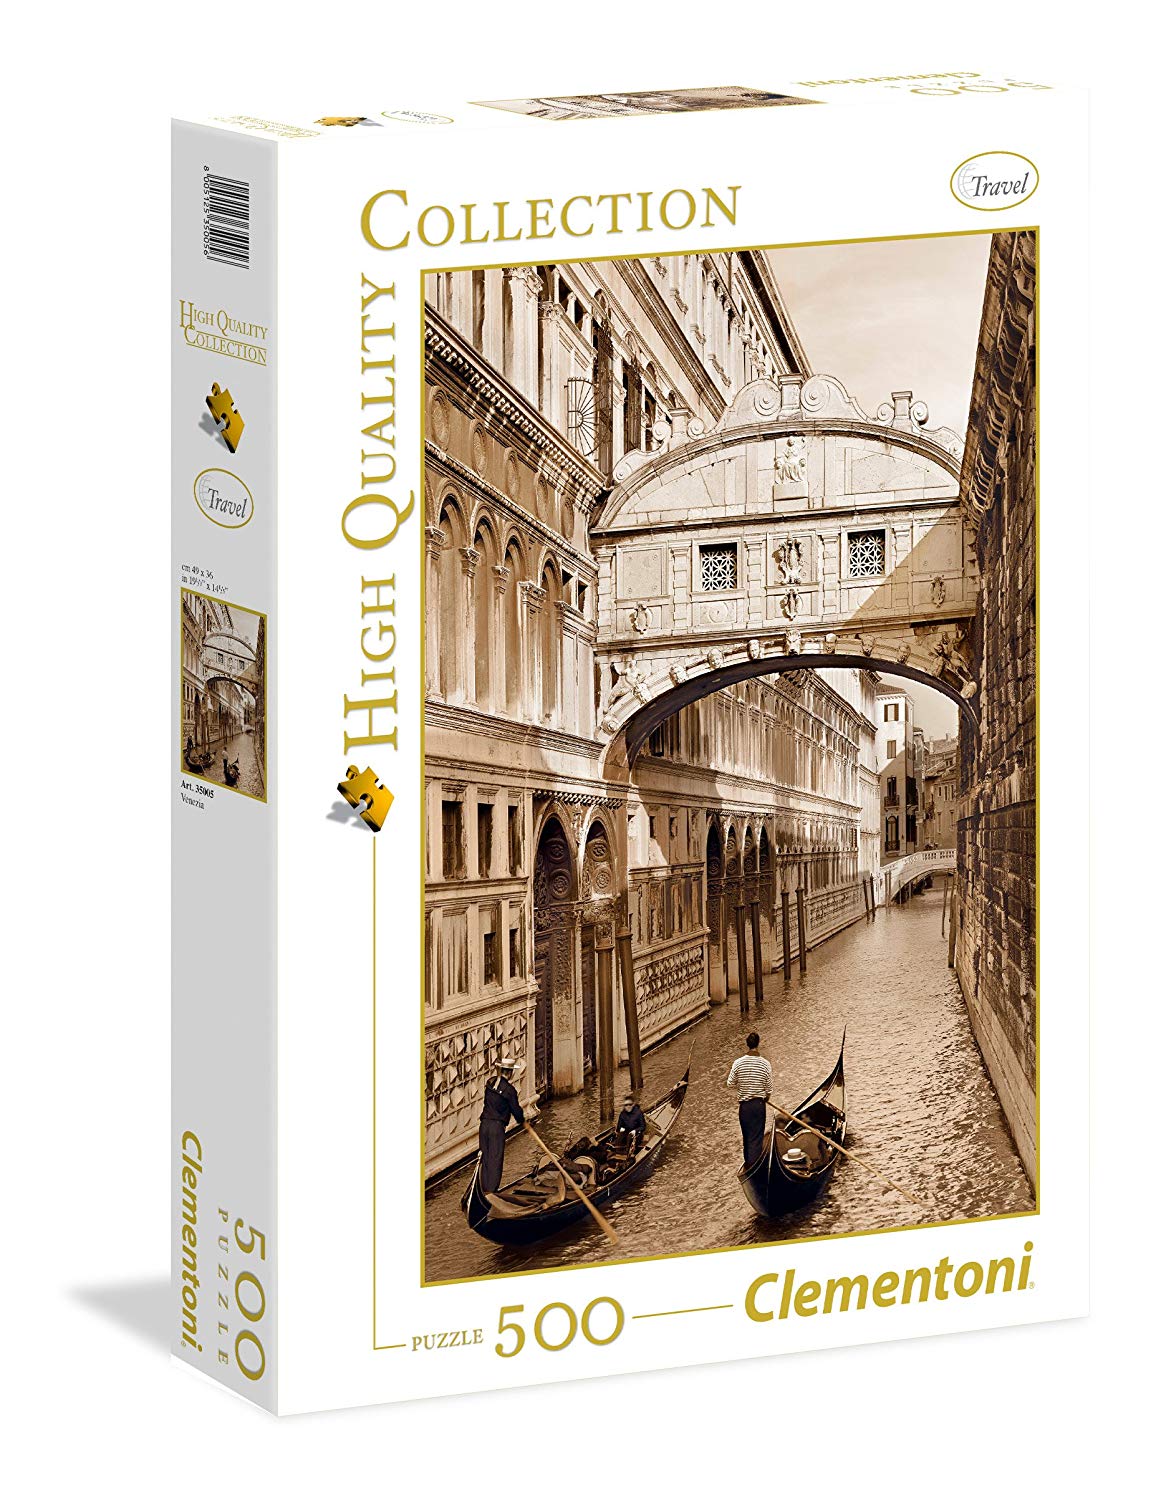 Clementoni Venezia Collection High Quality Puzzle Pieces